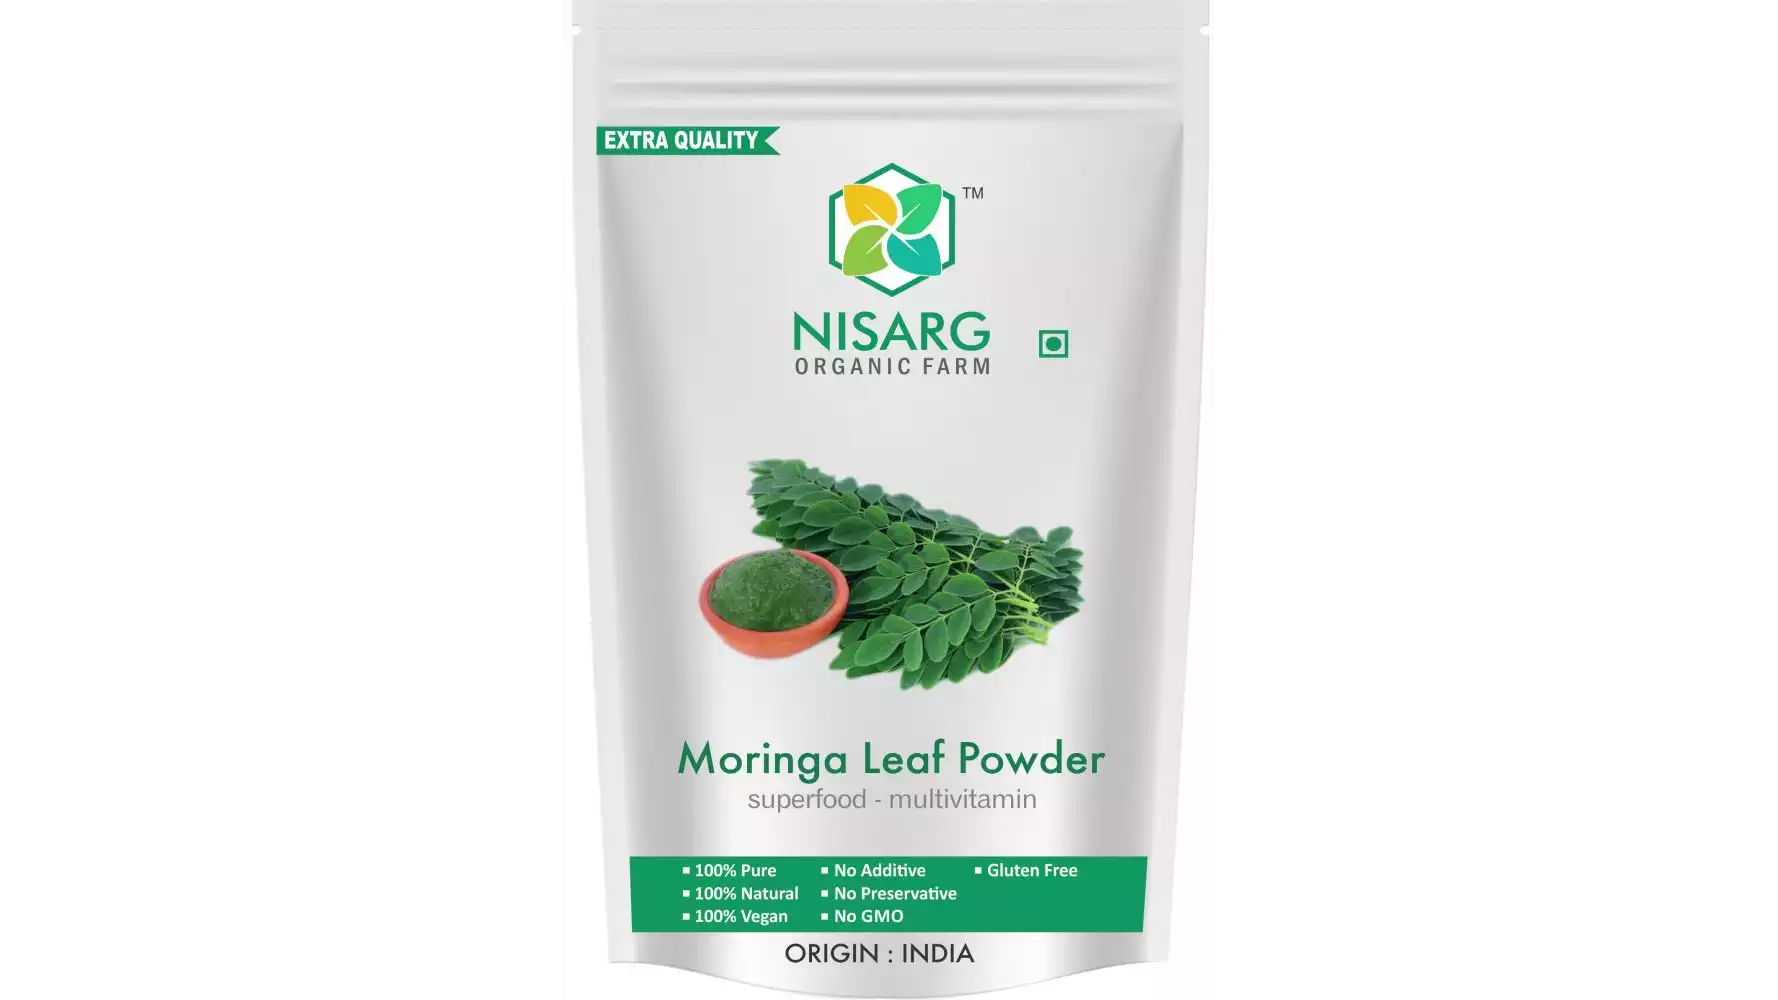 Nisarg Organic Farm Moringa Leaf Powder (1kg)